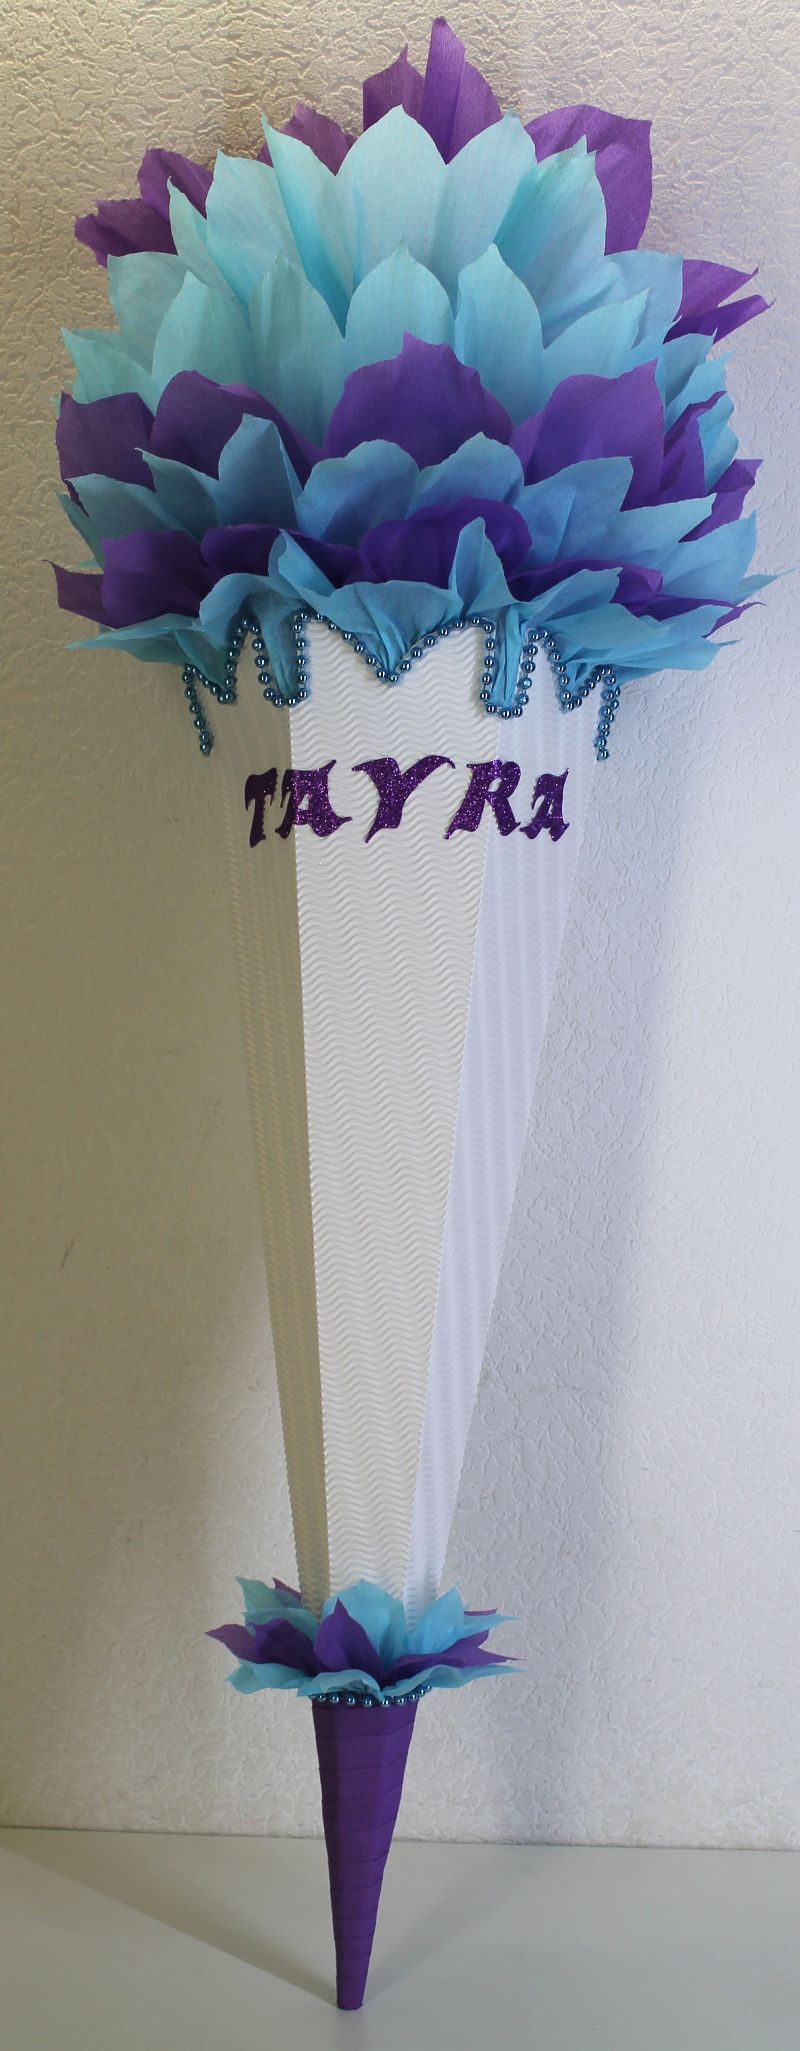  - Schultüte Zuckertüte Rohling zum selbst verzieren Rohling 70 75 80 85 90 100 cm / 1m für Mädchen HANDARBEIT hellblau türkis lila weiß